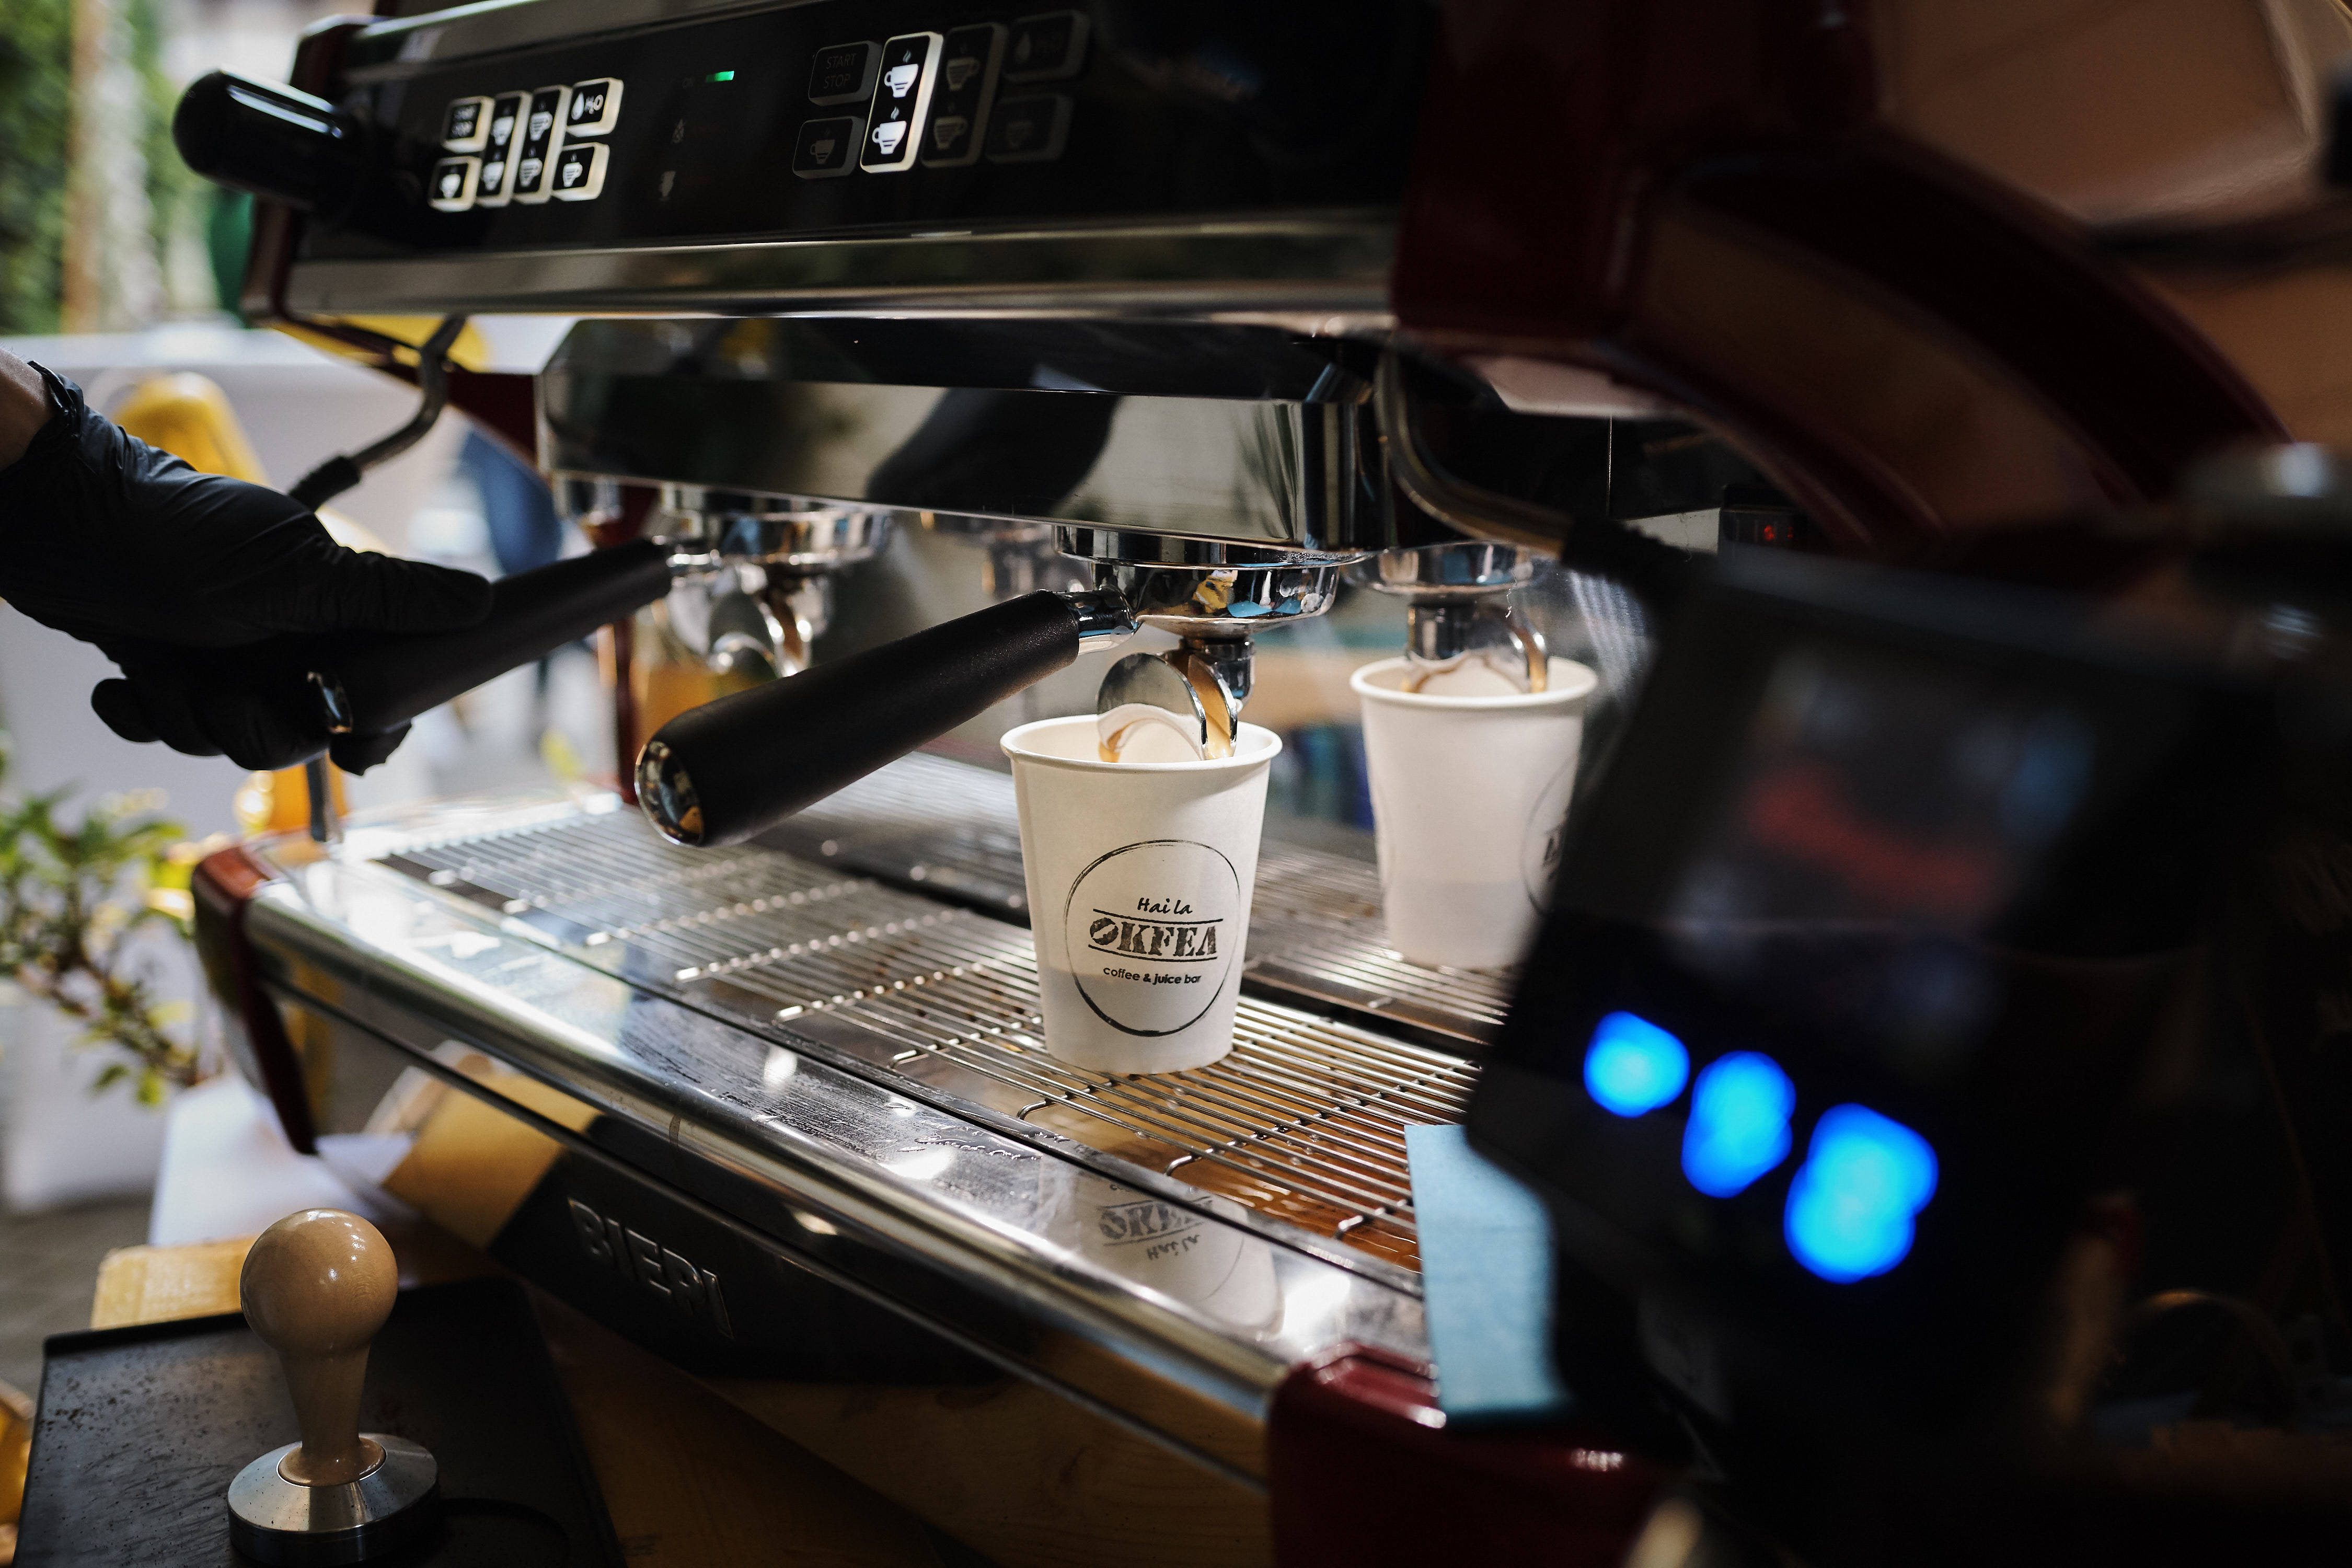 LanÅ£ul de cafenele Okfea vrea sÄ deschidÄ Ã®n acest an 7 locaÅ£ii Ã®n francizÄ Åi sÄ Ã®Åi dubleze afacerile faÅ£Ä de 2018, la 500.000 euro